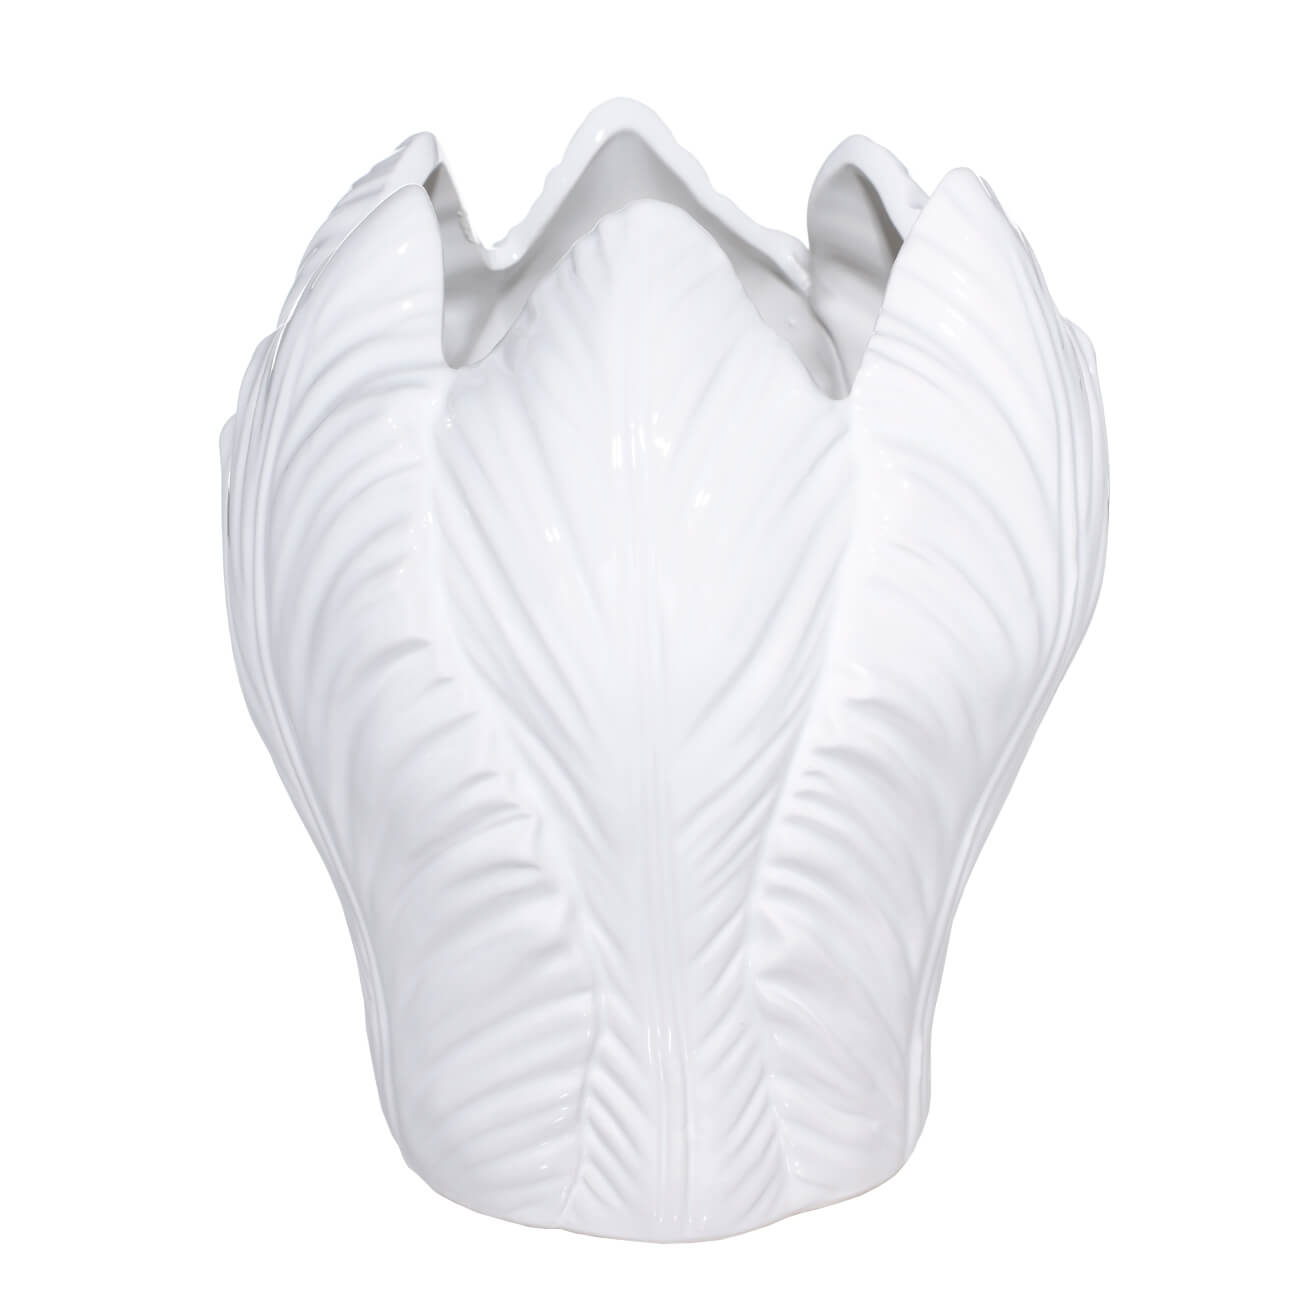 Flower vase, 21 cm, ceramic, white, Tulip, Flower garden изображение № 1